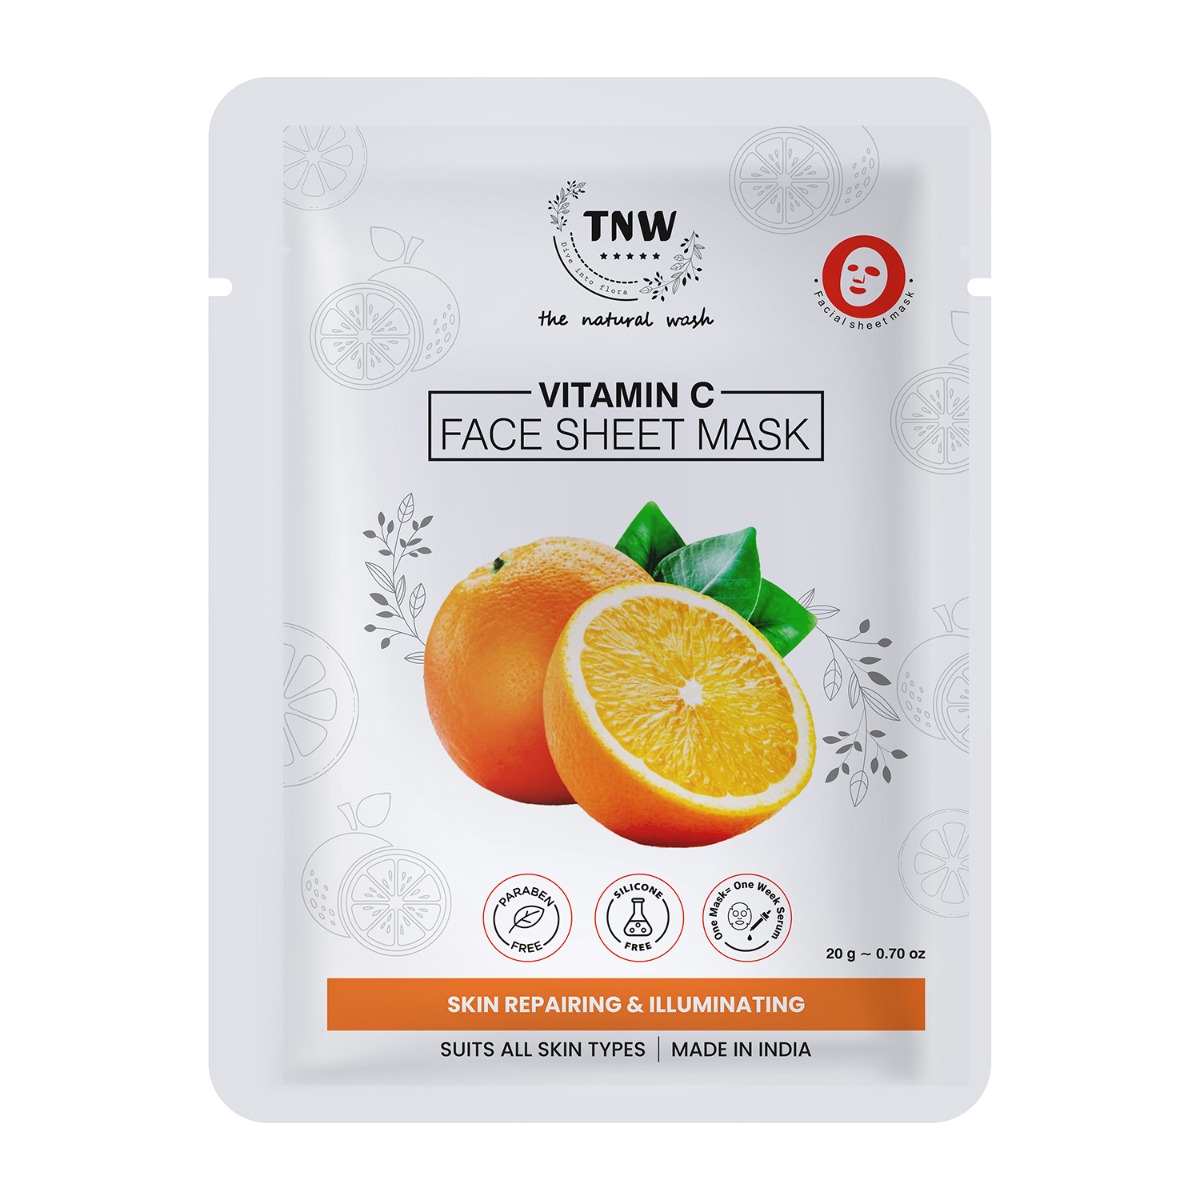 TNW - The Natural Wash Vitamin C Face Sheet Mask For Skin Repairing and Illuminating, 20gm